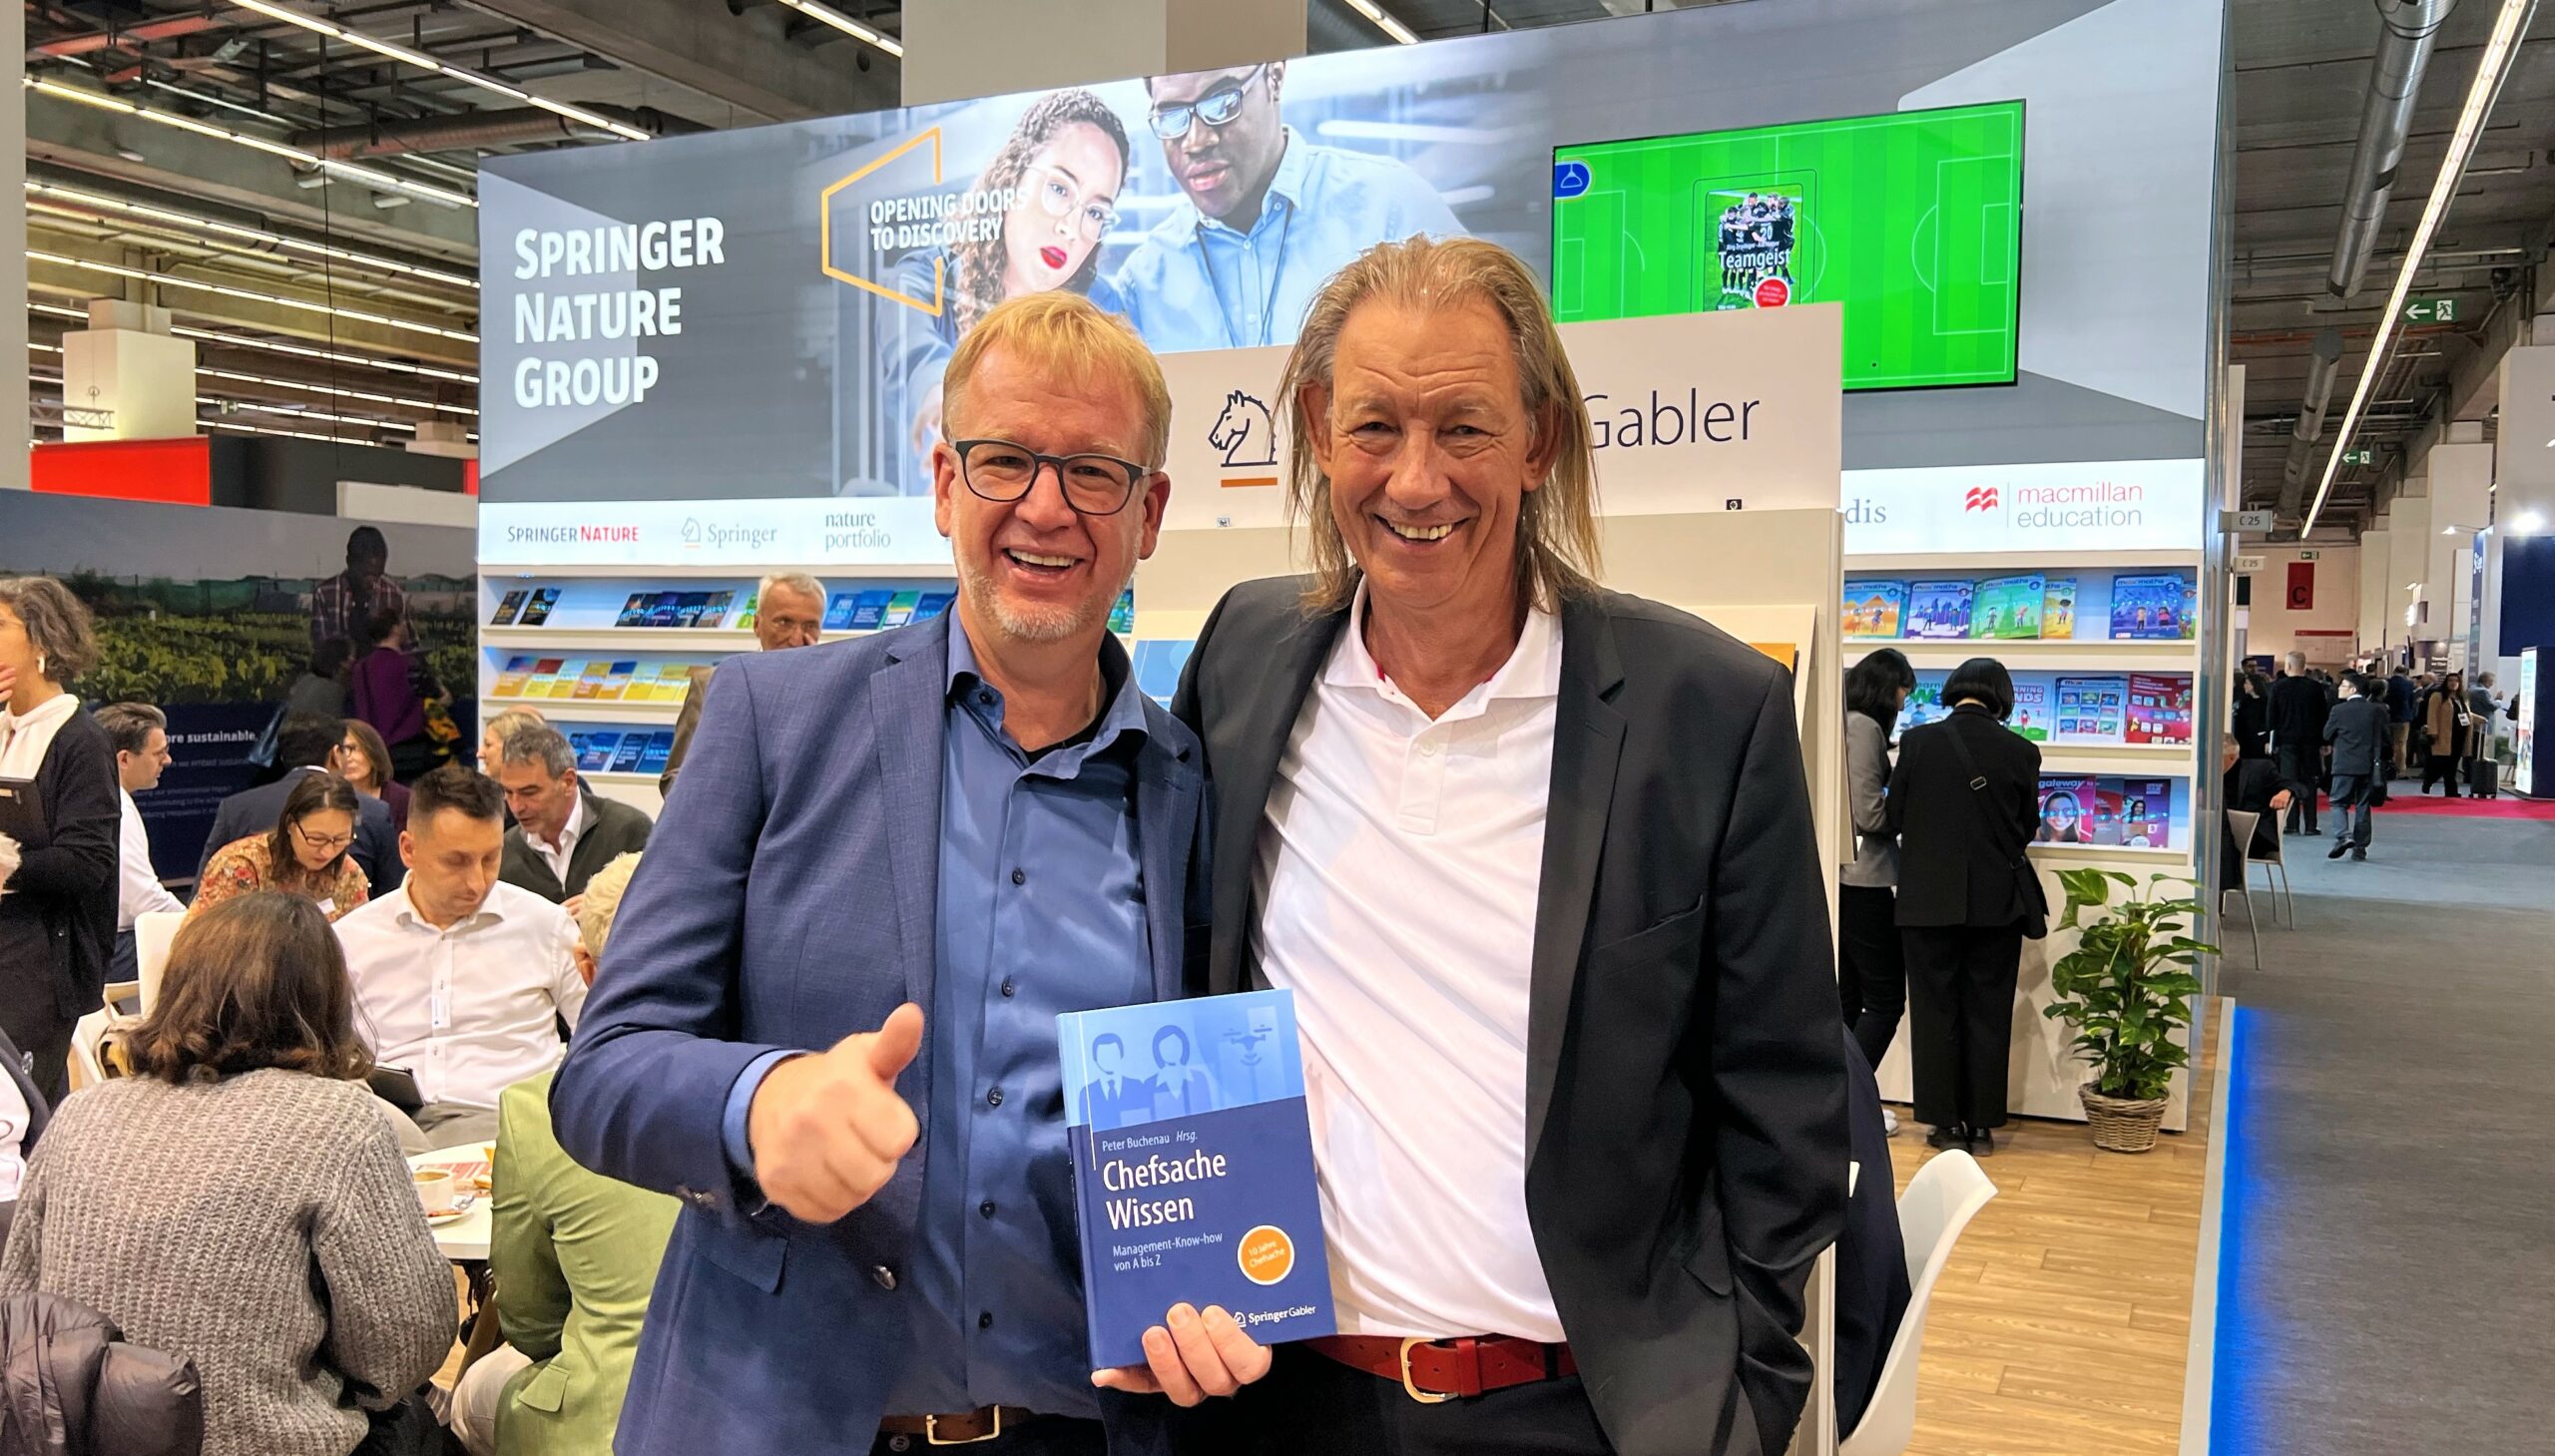 Foto von Uwe Brüggemann und Peter Buchenau auf der Frankfurter Buchmesse beim Springer Nature Stand mit Buch Chefsache Wissen